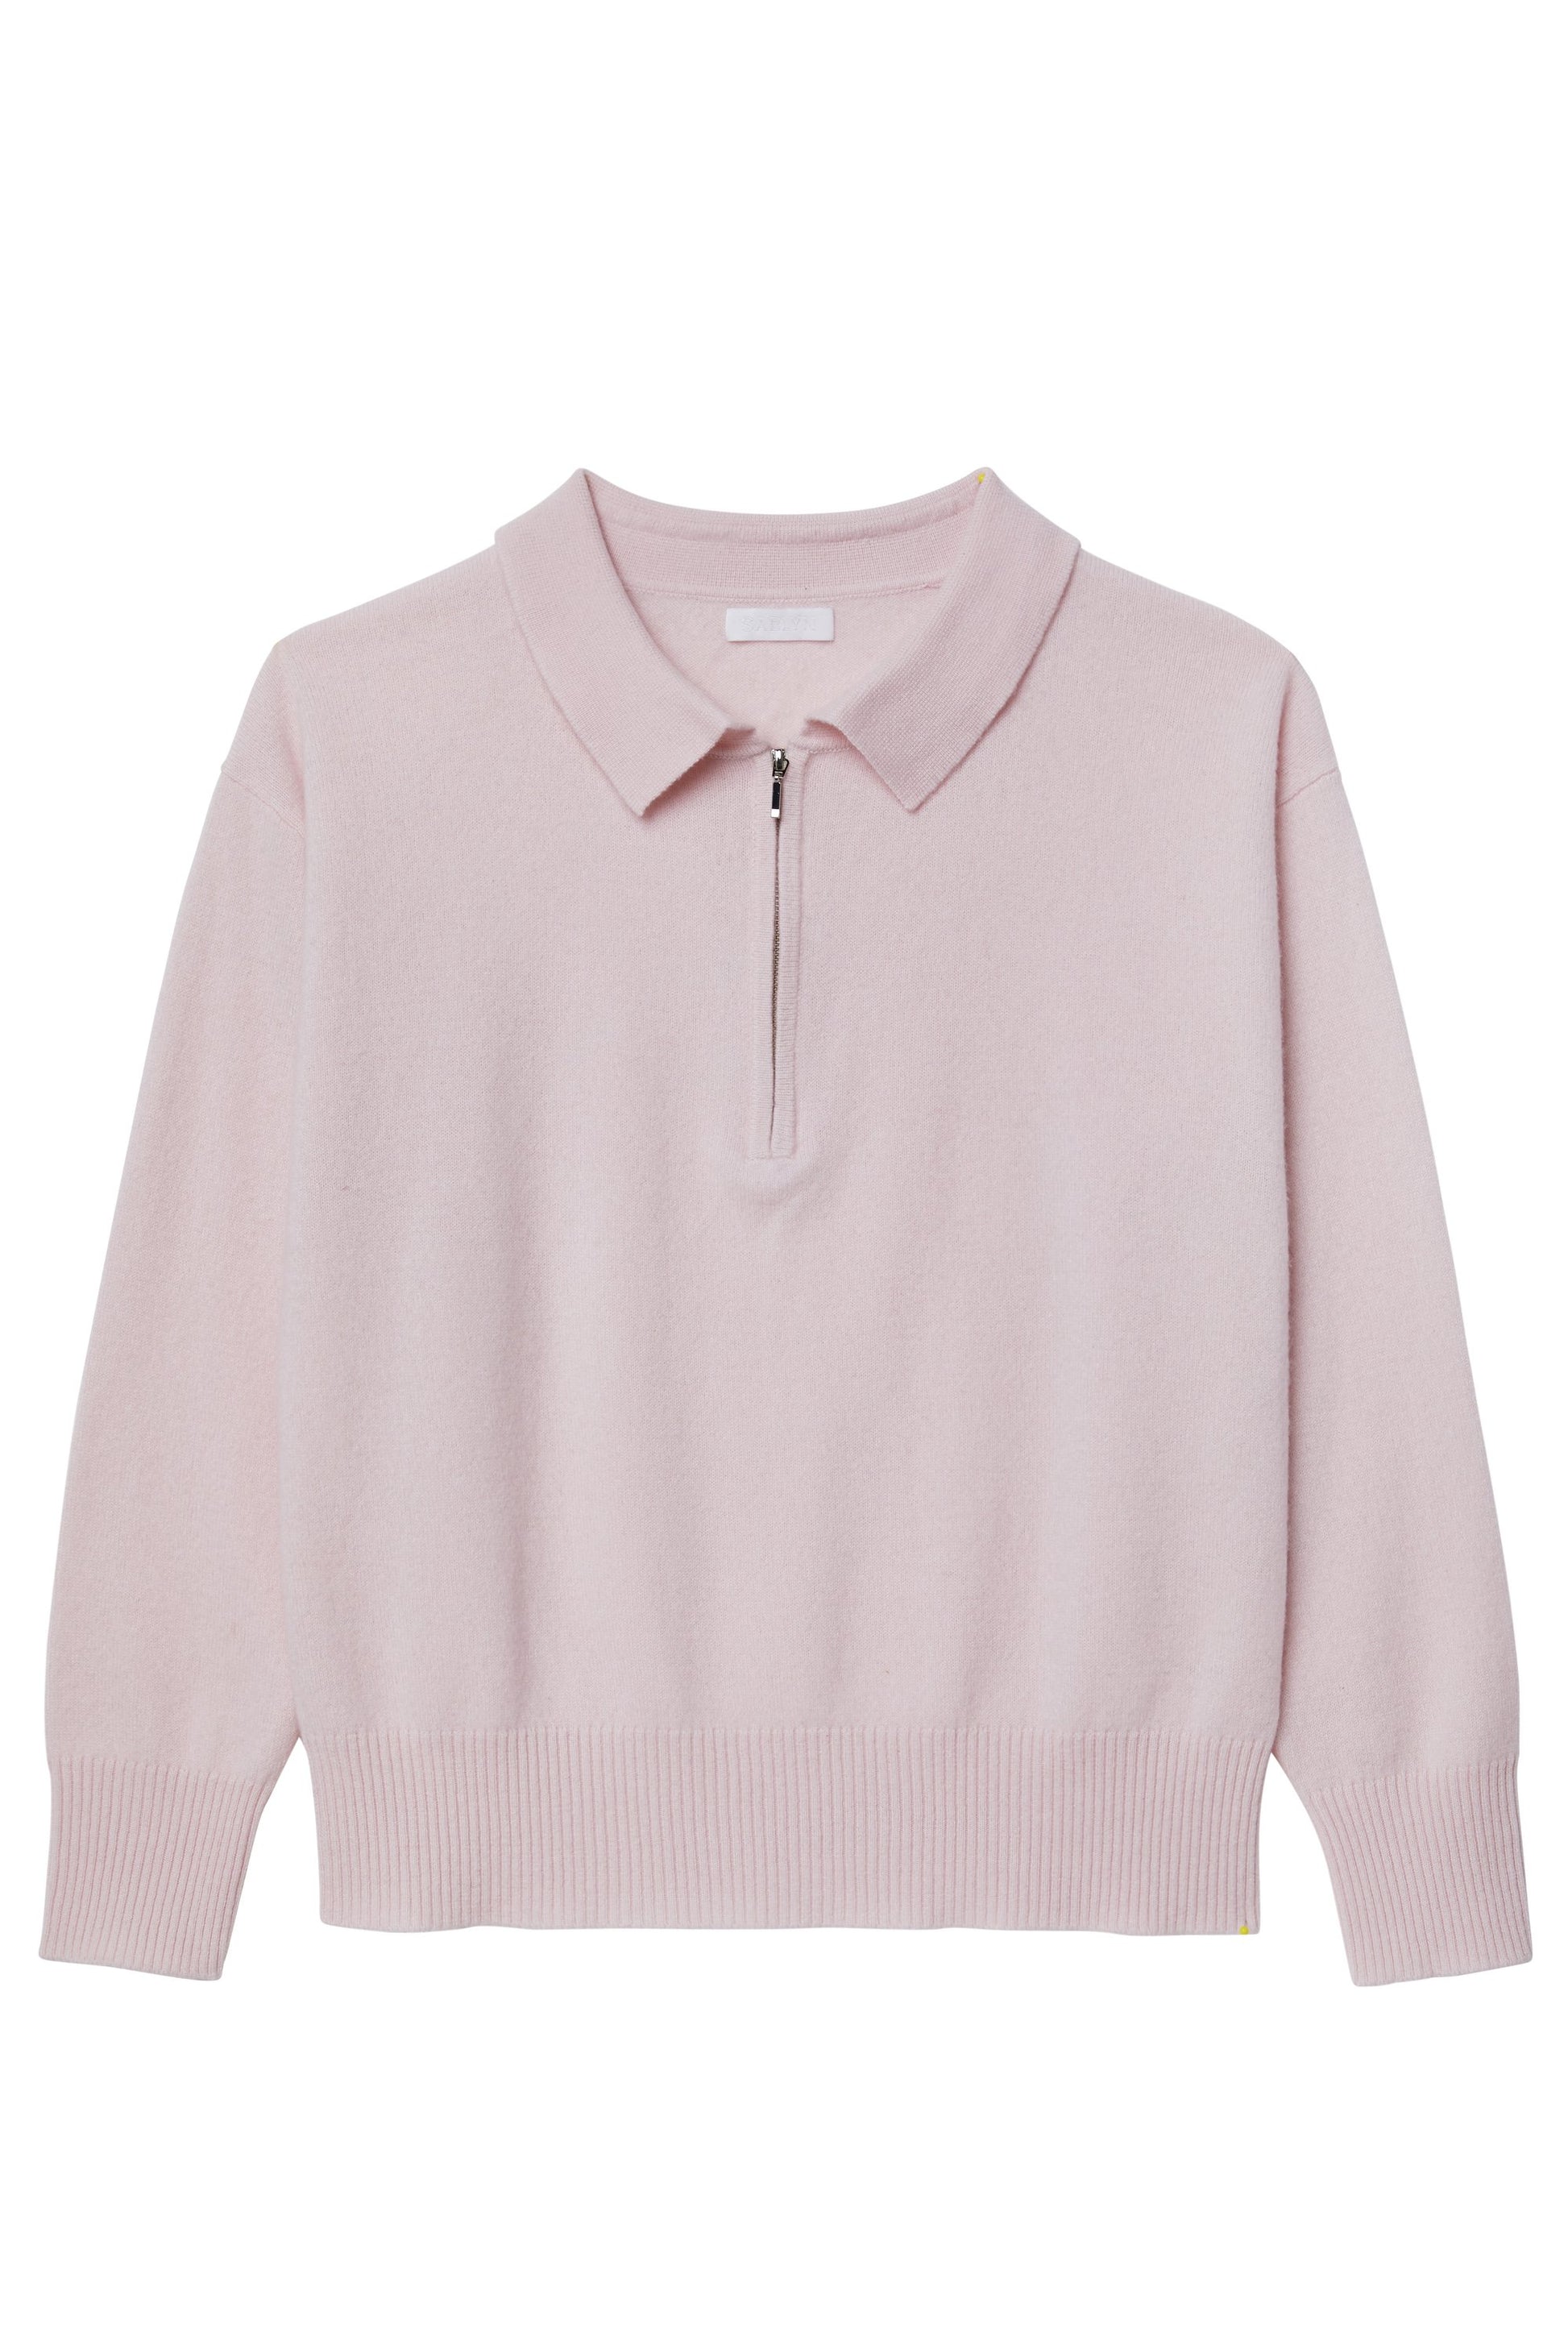 SABLYN Darlene Collar Sweater in Blushing